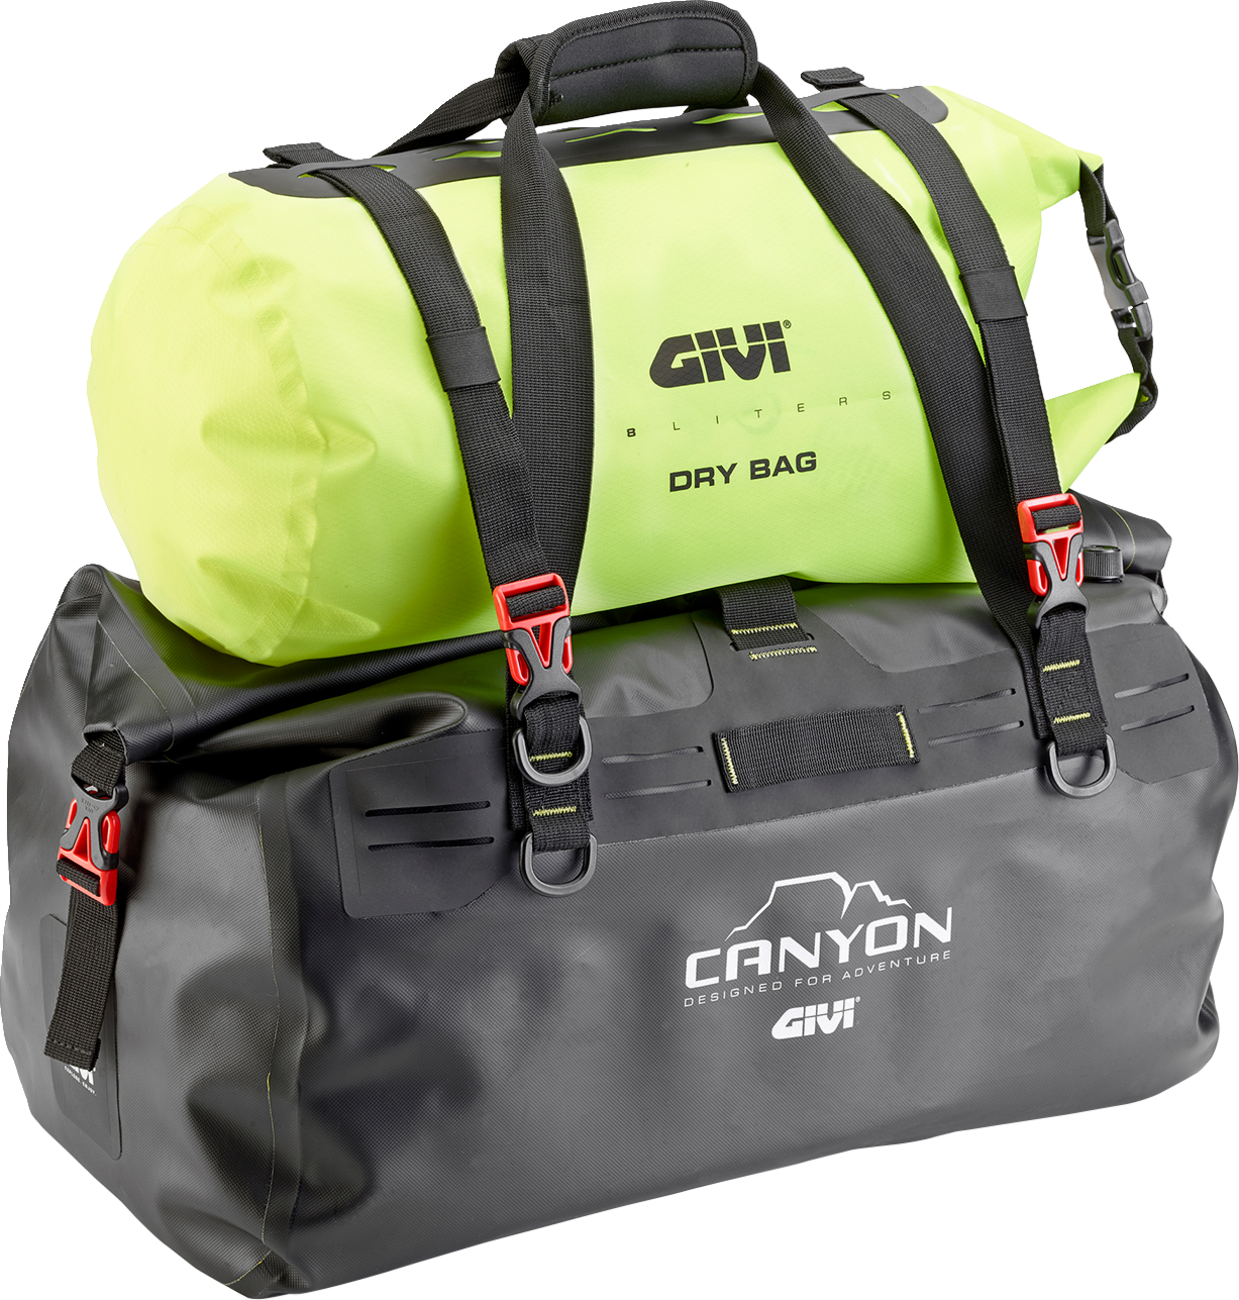 GIVI Cargo Bag - 40 Liter GRT712B